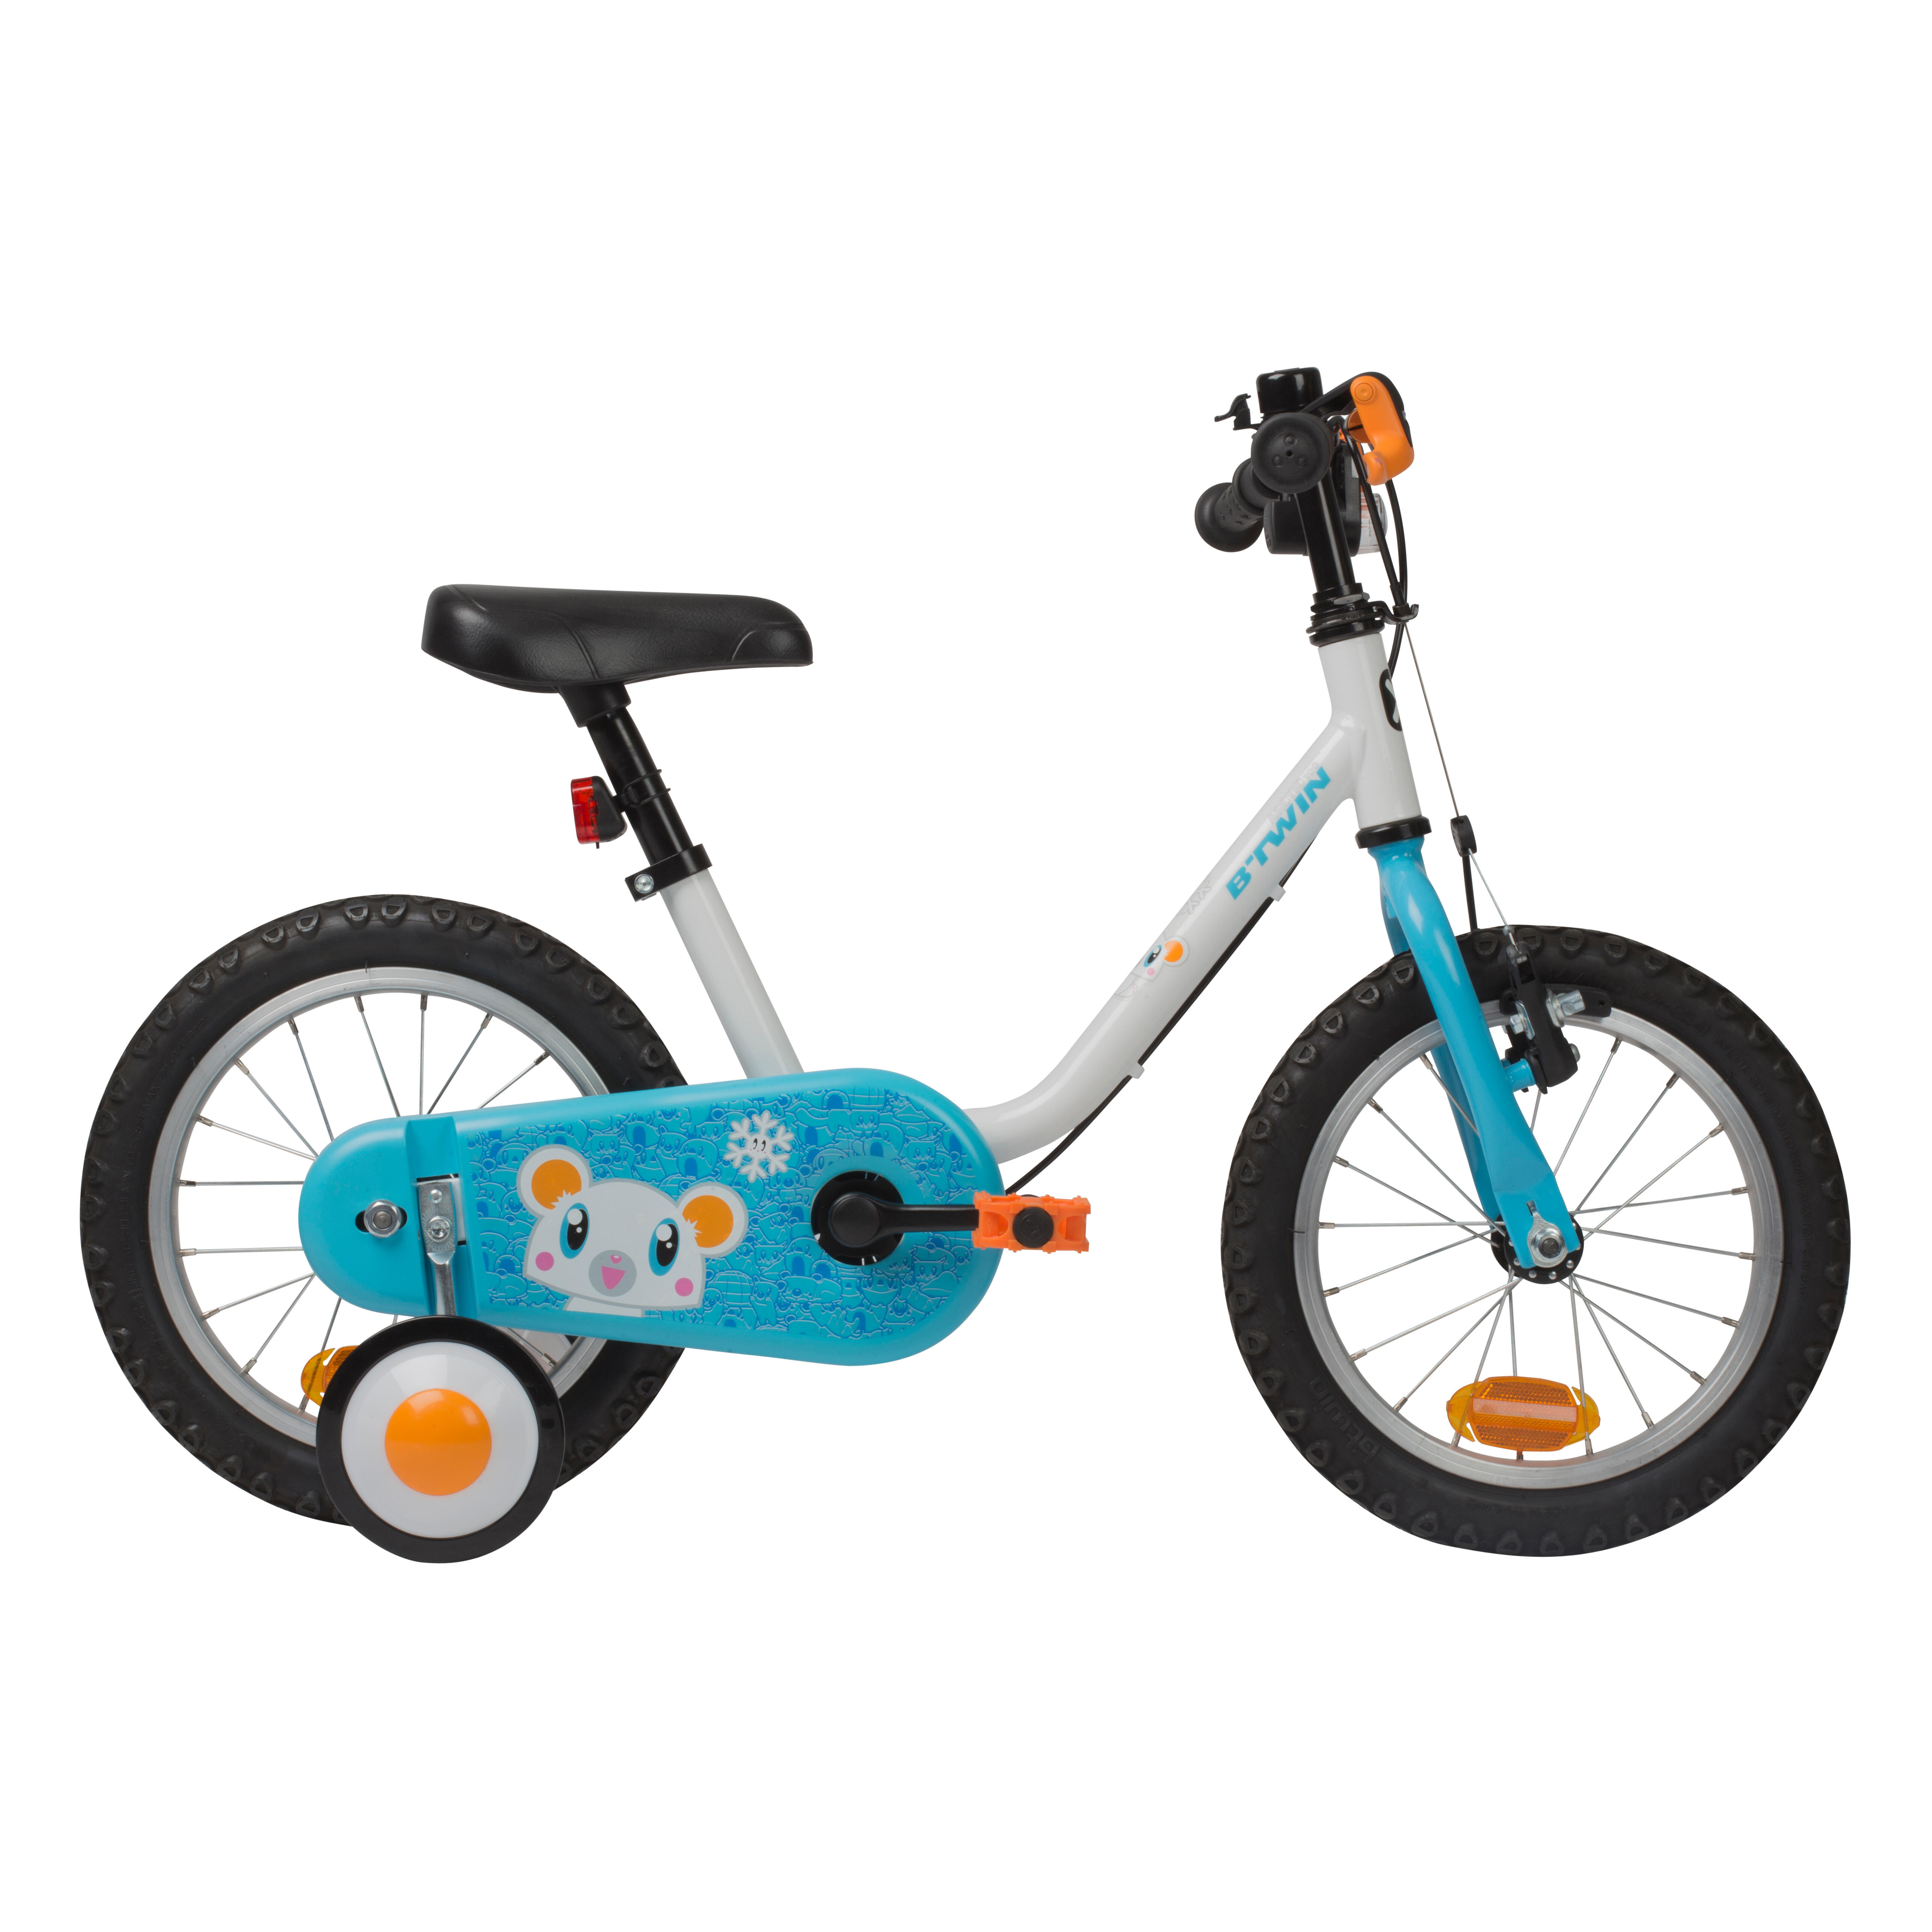 Tirevelo - Tracter un vélo enfant facilement et sans à-coups